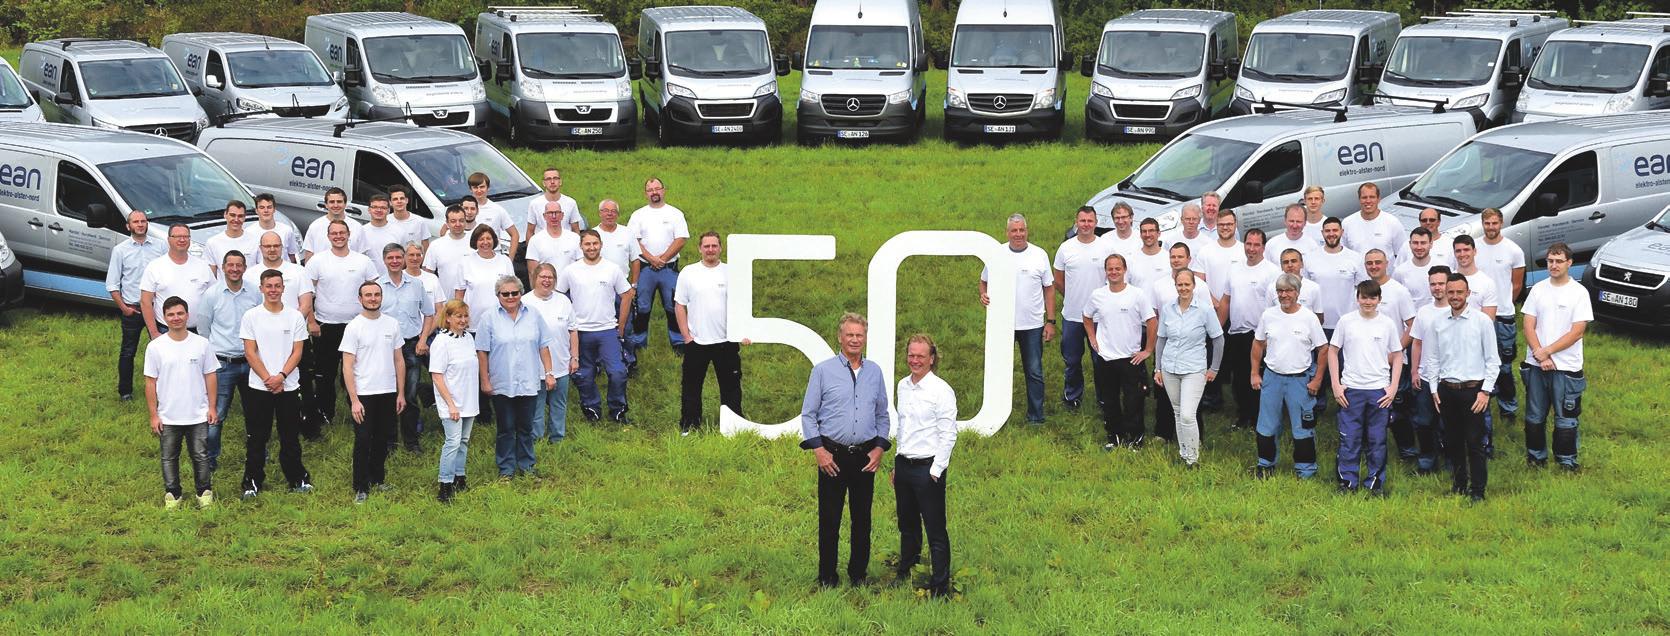 2019 feiern Holger (vorn l.) und Henning Schurbohm mit ihren Mitarbeiter:innen das 50-jährige Bestehen ihres Unternehmens ean Elektro-Alster-Nord.